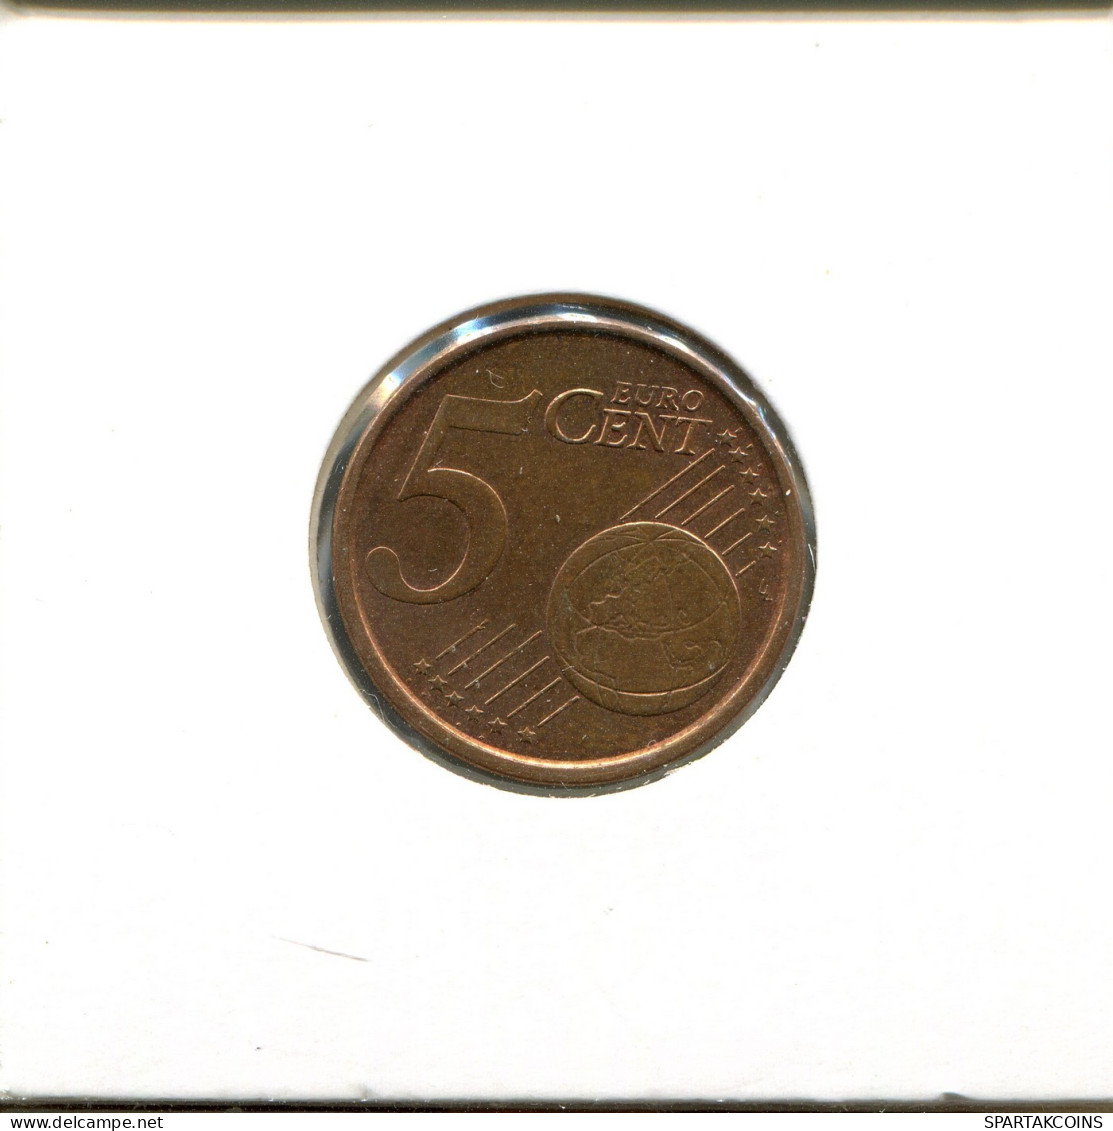 5 EURO CENTS 2005 SPAIN Coin #EU568.U.A - España